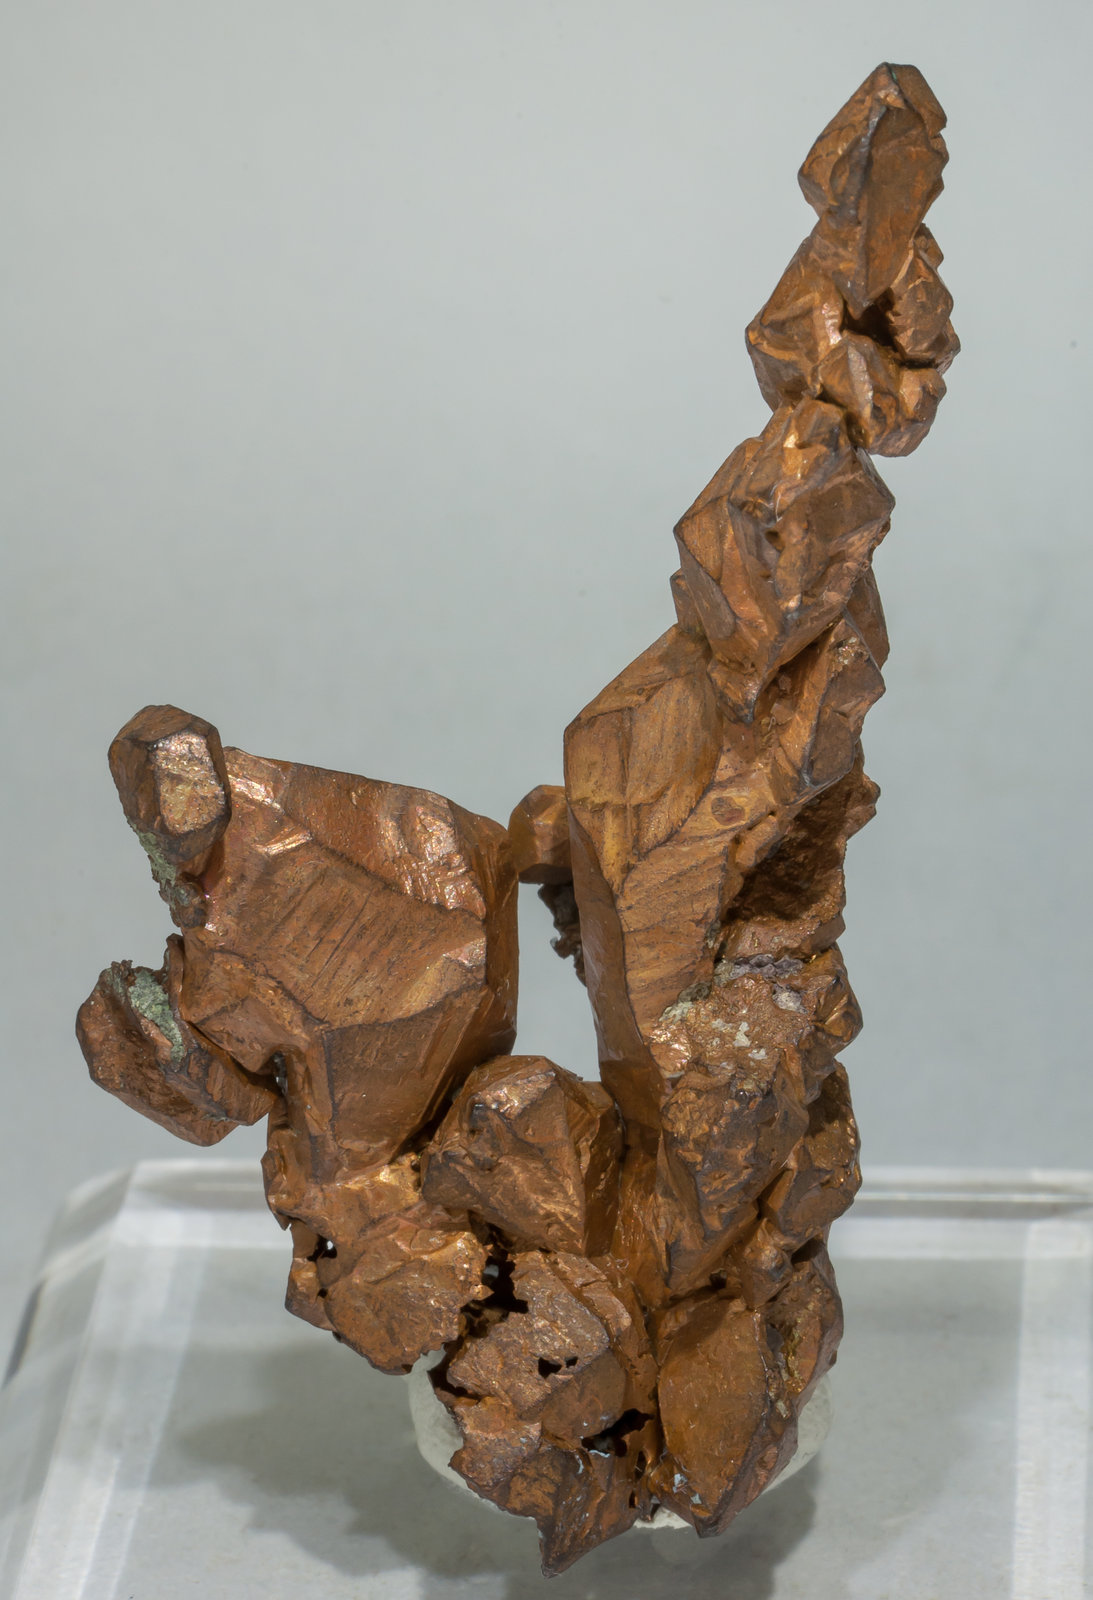 specimens/s_imagesAE4/Copper-LX69AE4f.jpg